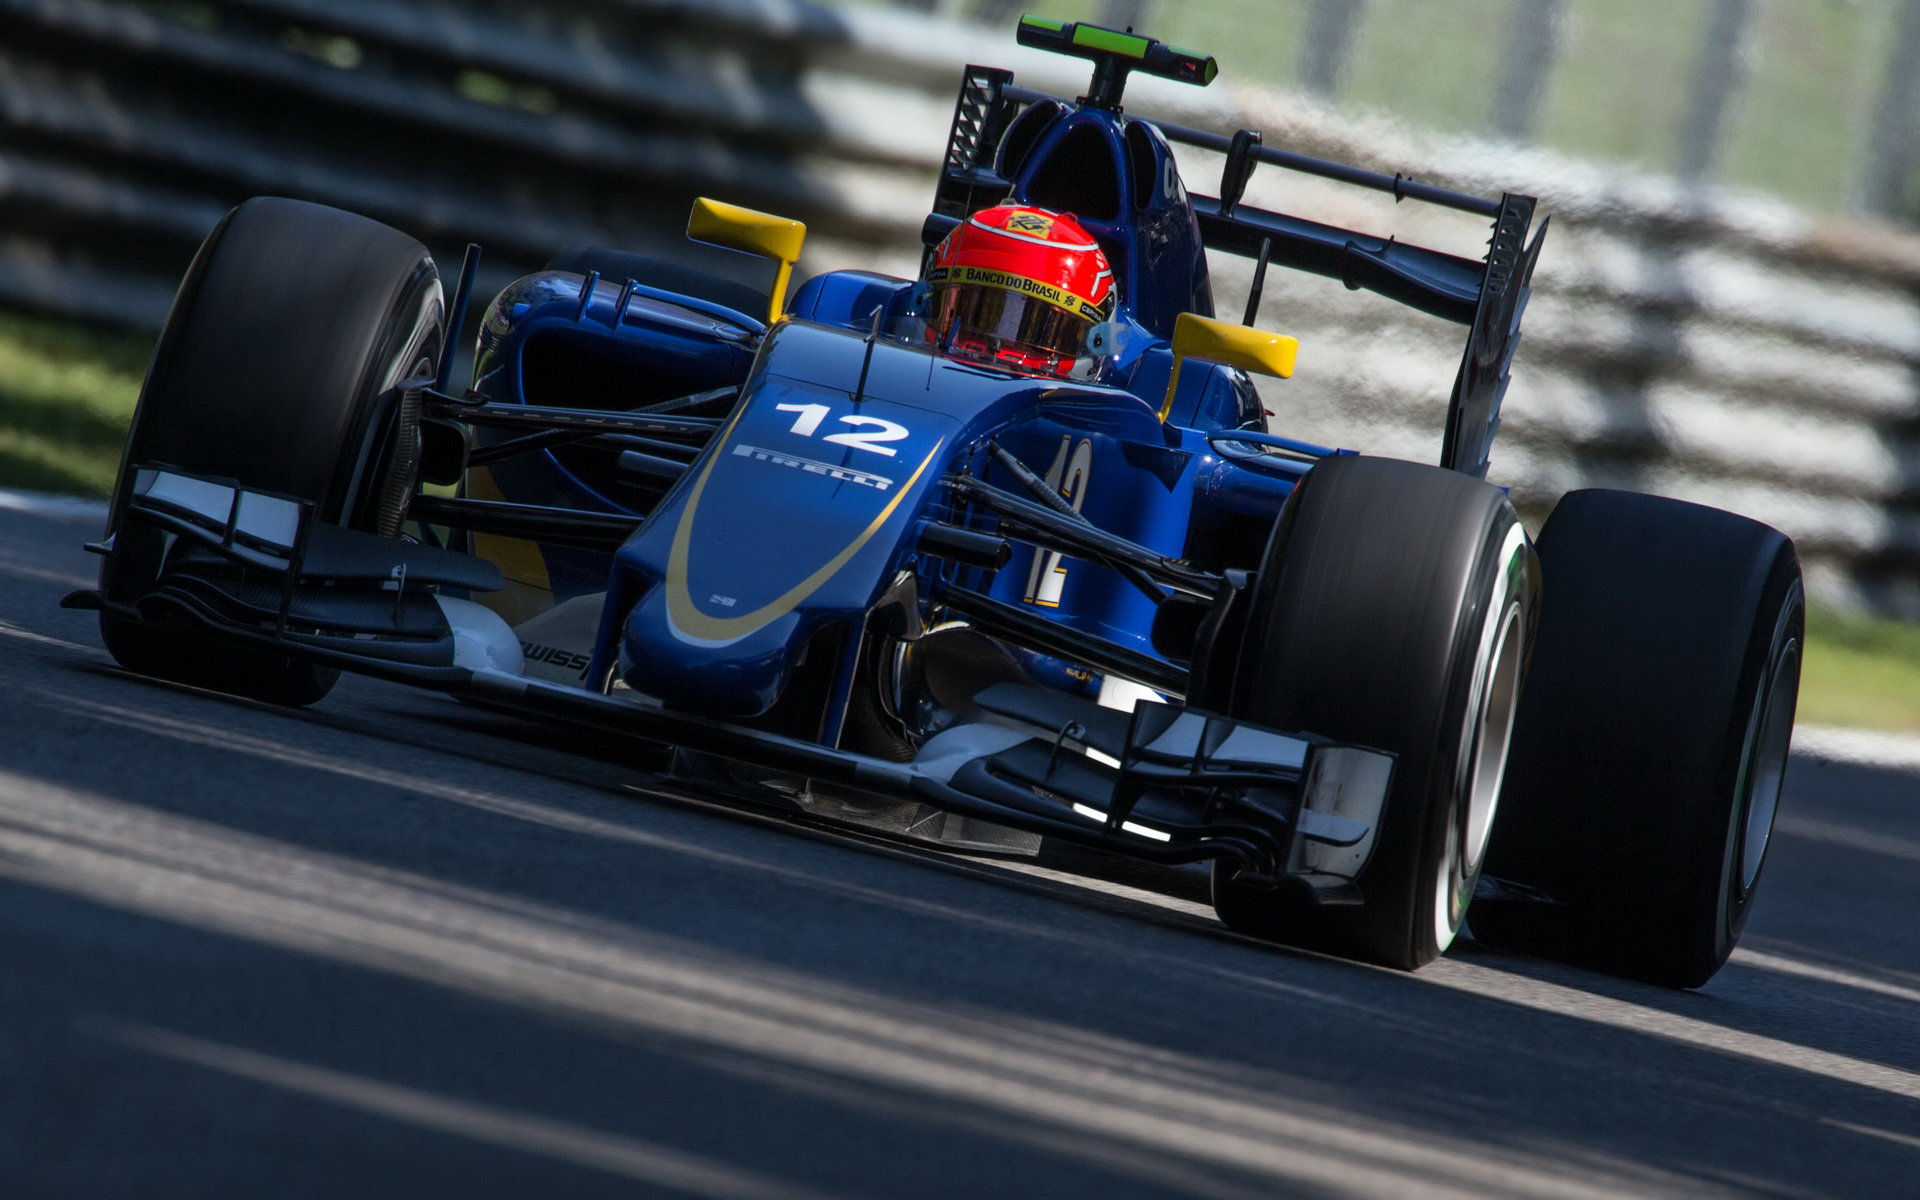 Felipe Nasr s použitím DRS, GP Itálie (Monza)